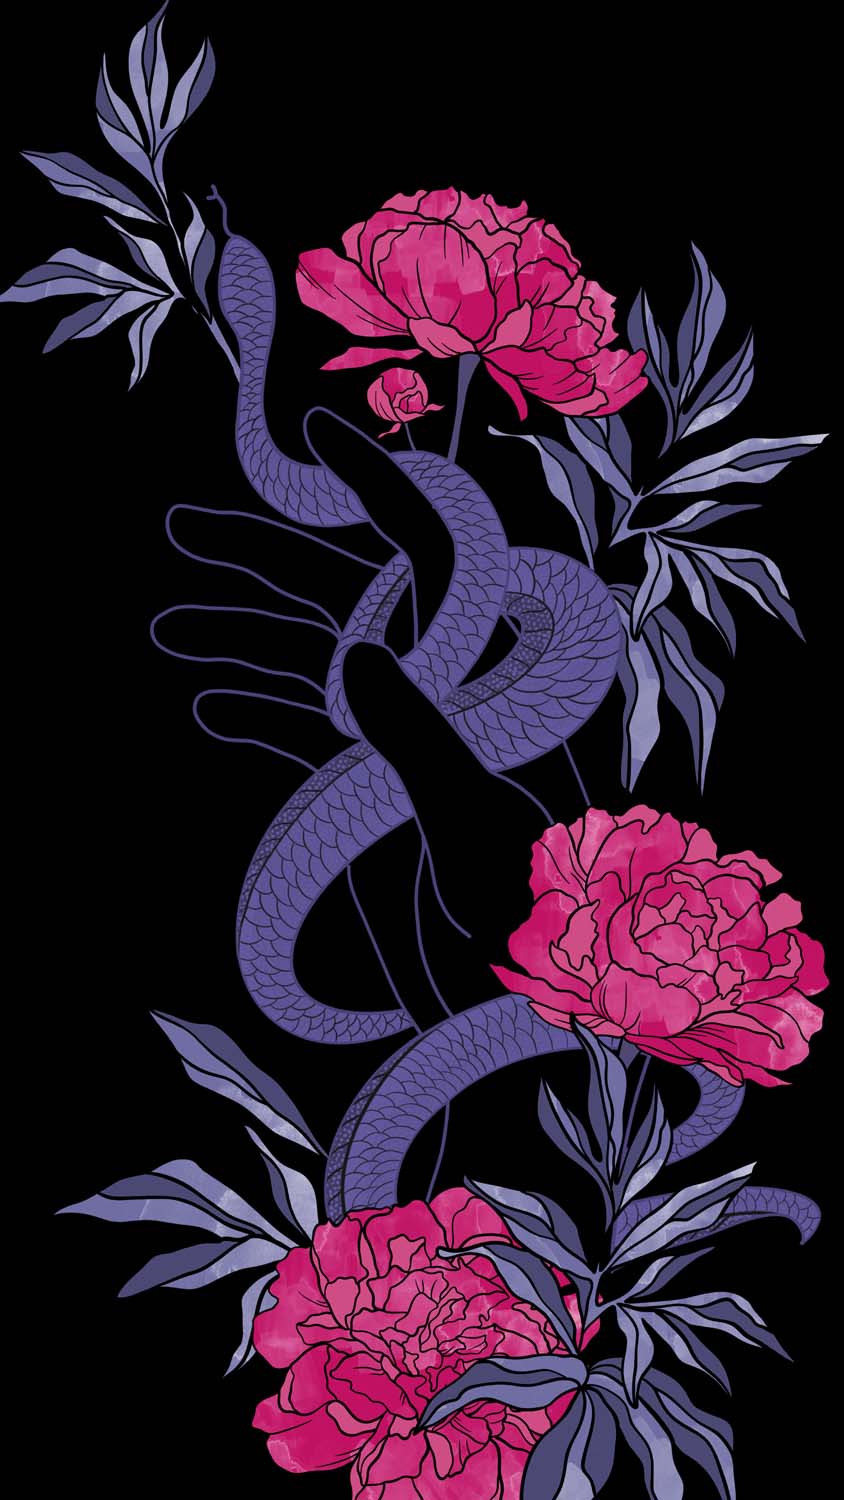 Flower Snake Art IPhone Wallpaper HD - IPhone Wallpapers : iPhone Wallpapers